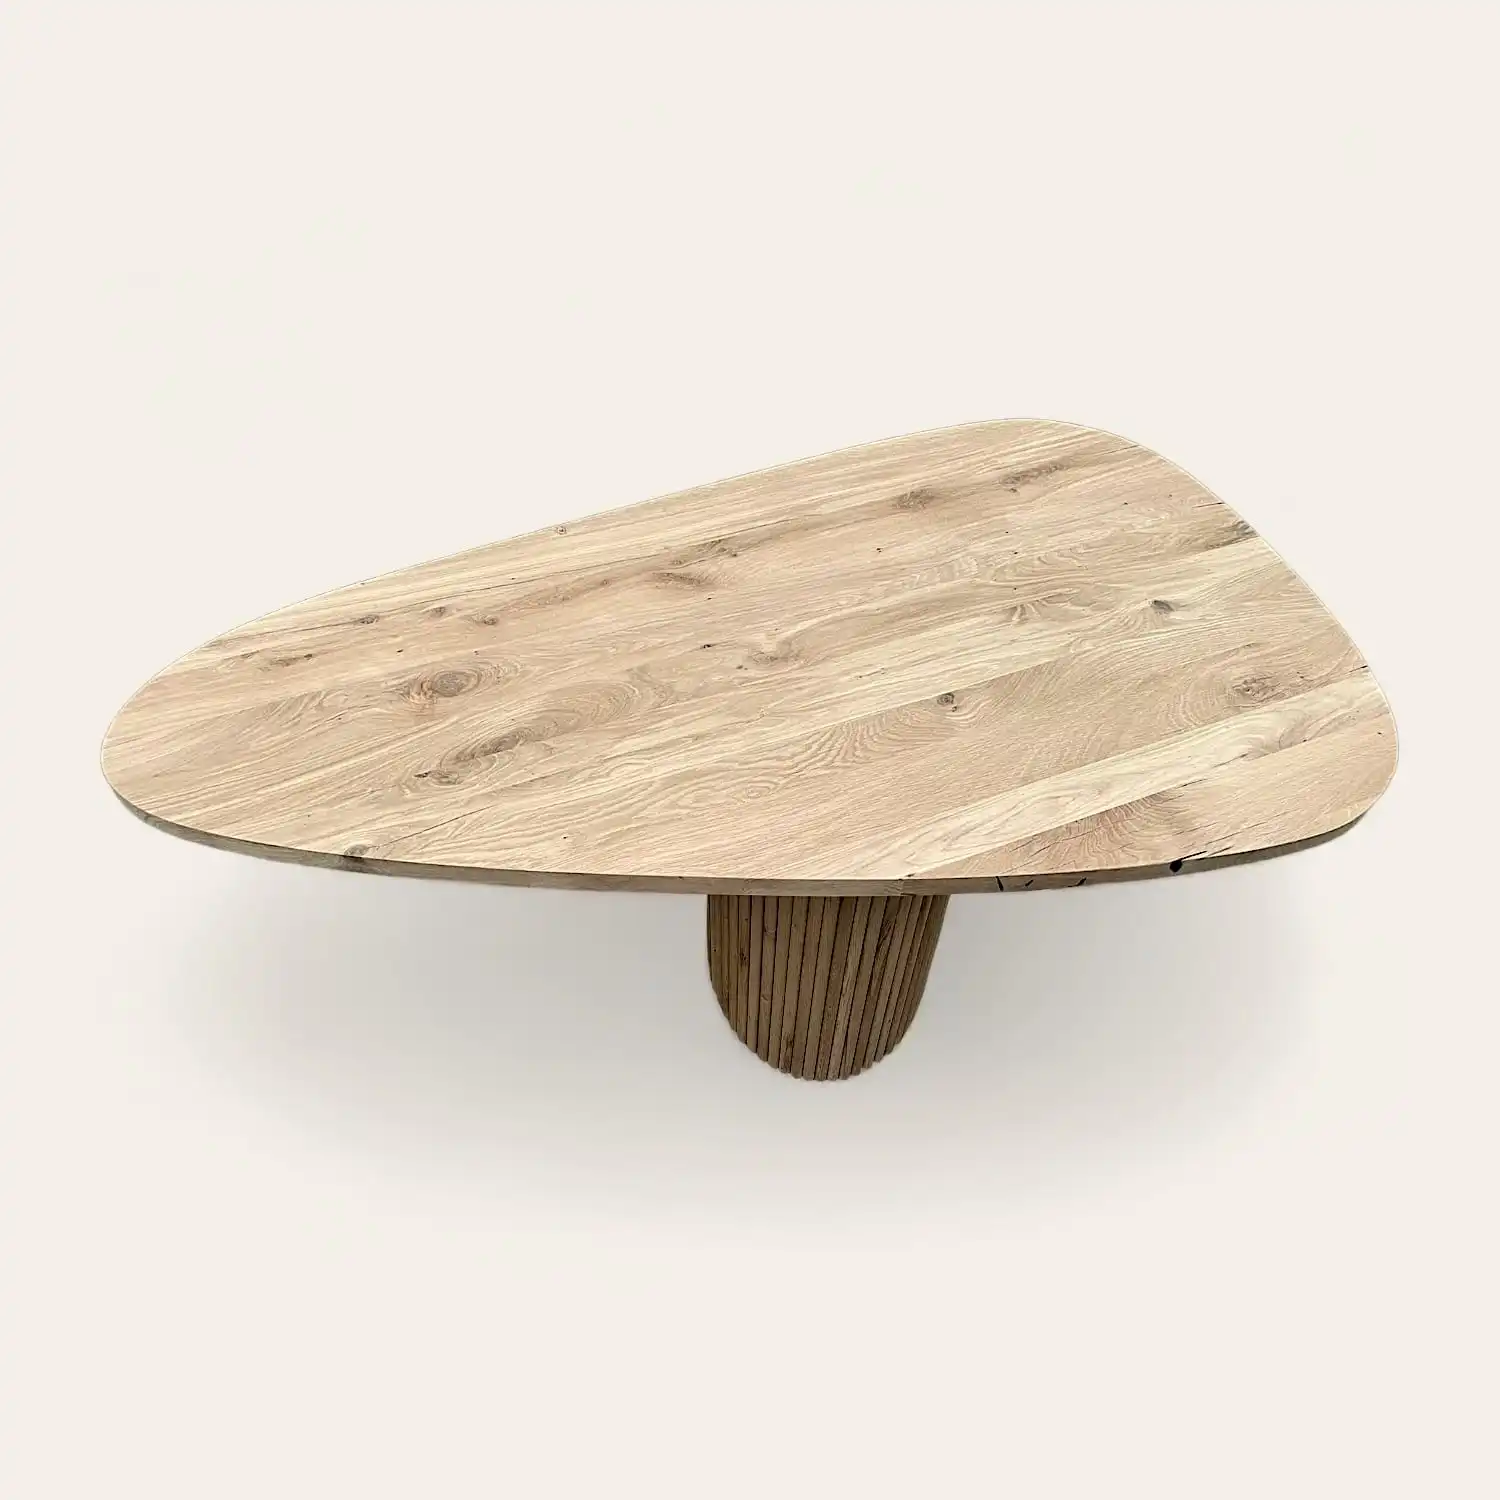  Une table basse en bois rustique avec un piètement en bois. 